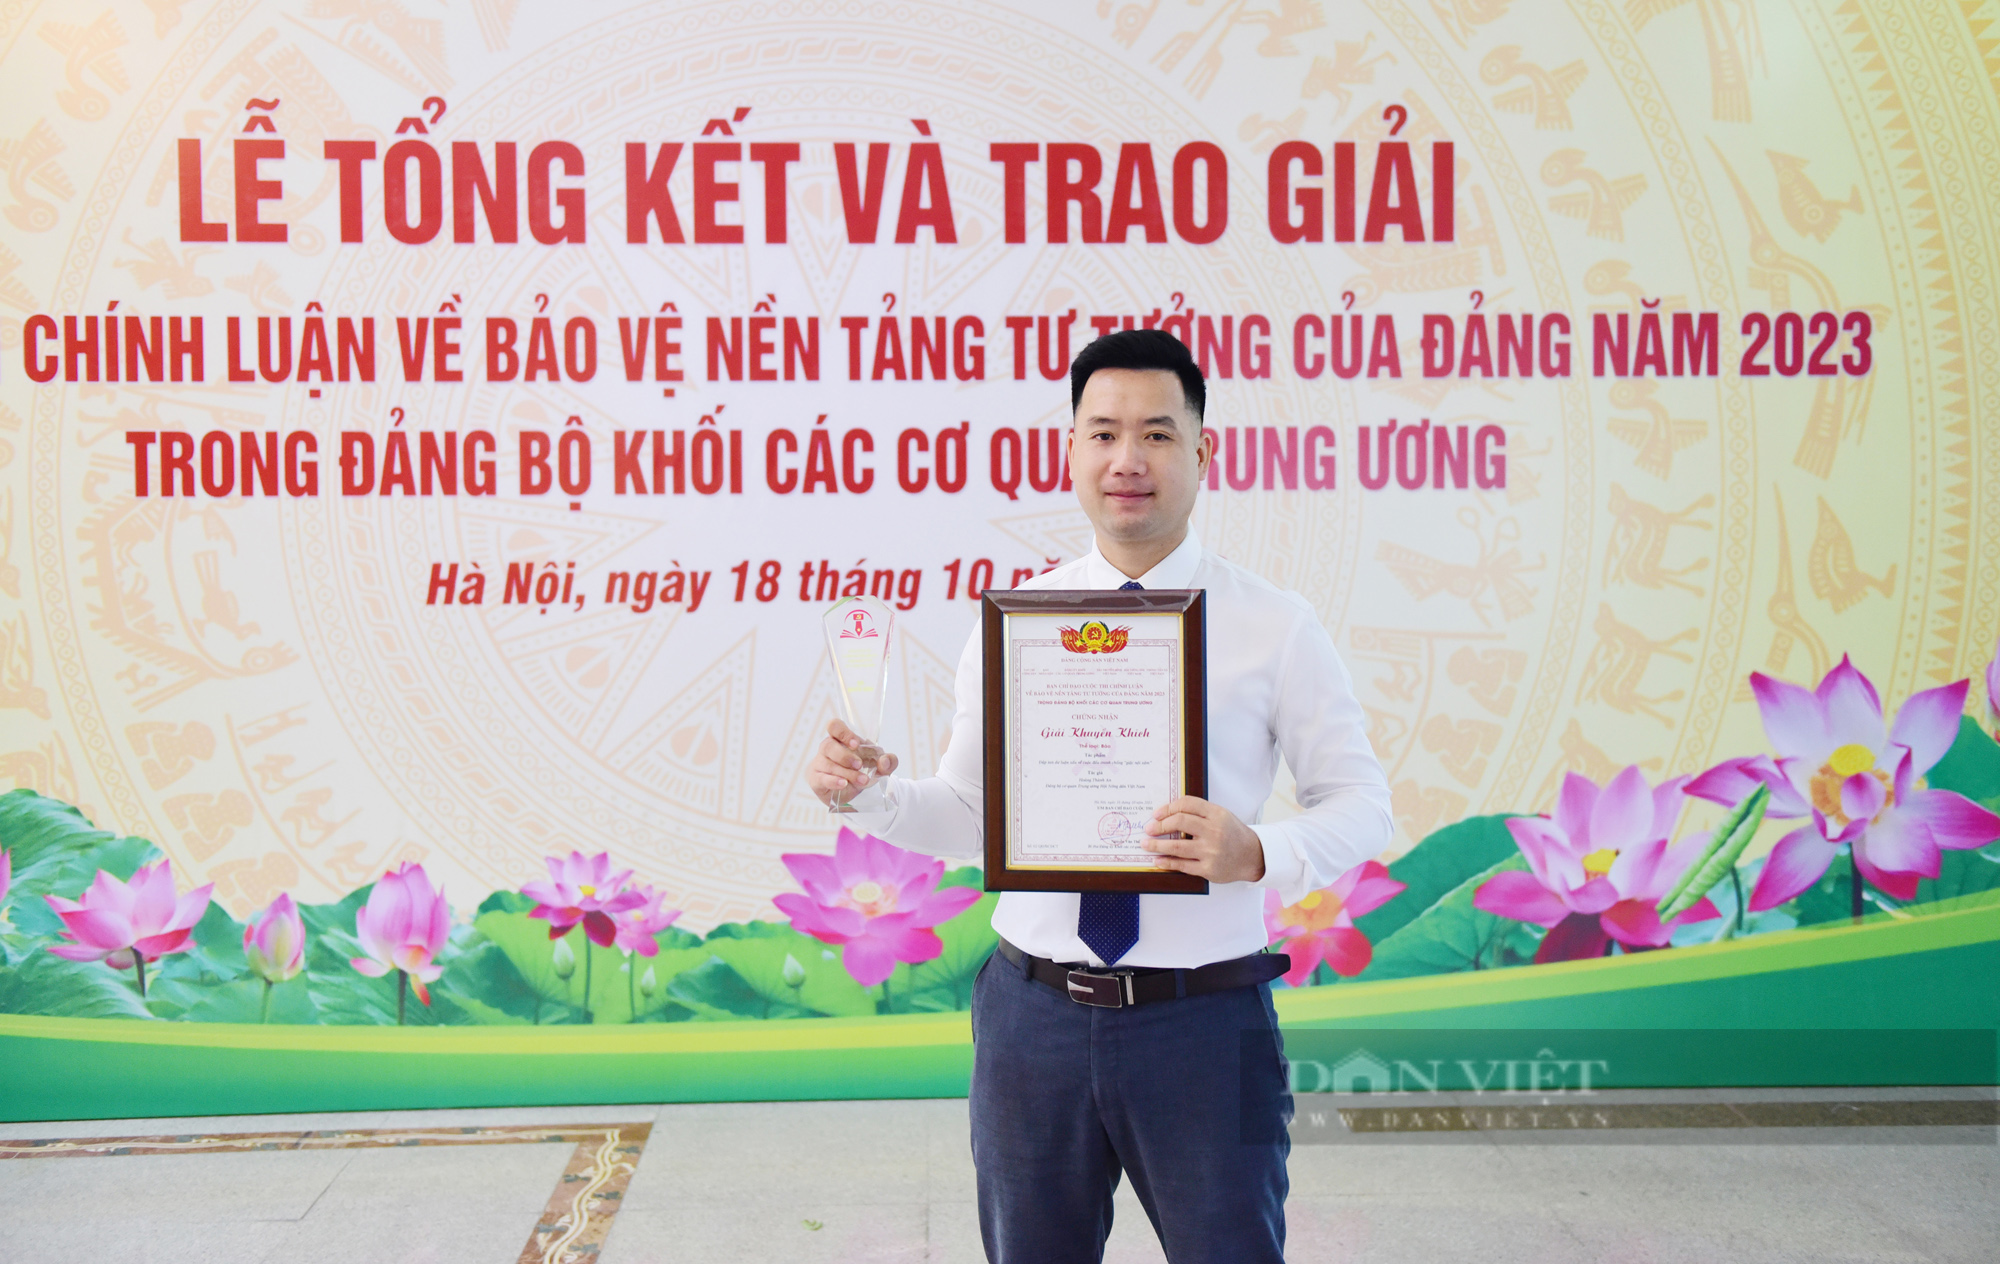 Trung ương Hội Nông dân Việt Nam đoạt 2 giải Cuộc thi chính luận về bảo vệ nền tảng tư tưởng của Đảng - Ảnh 2.